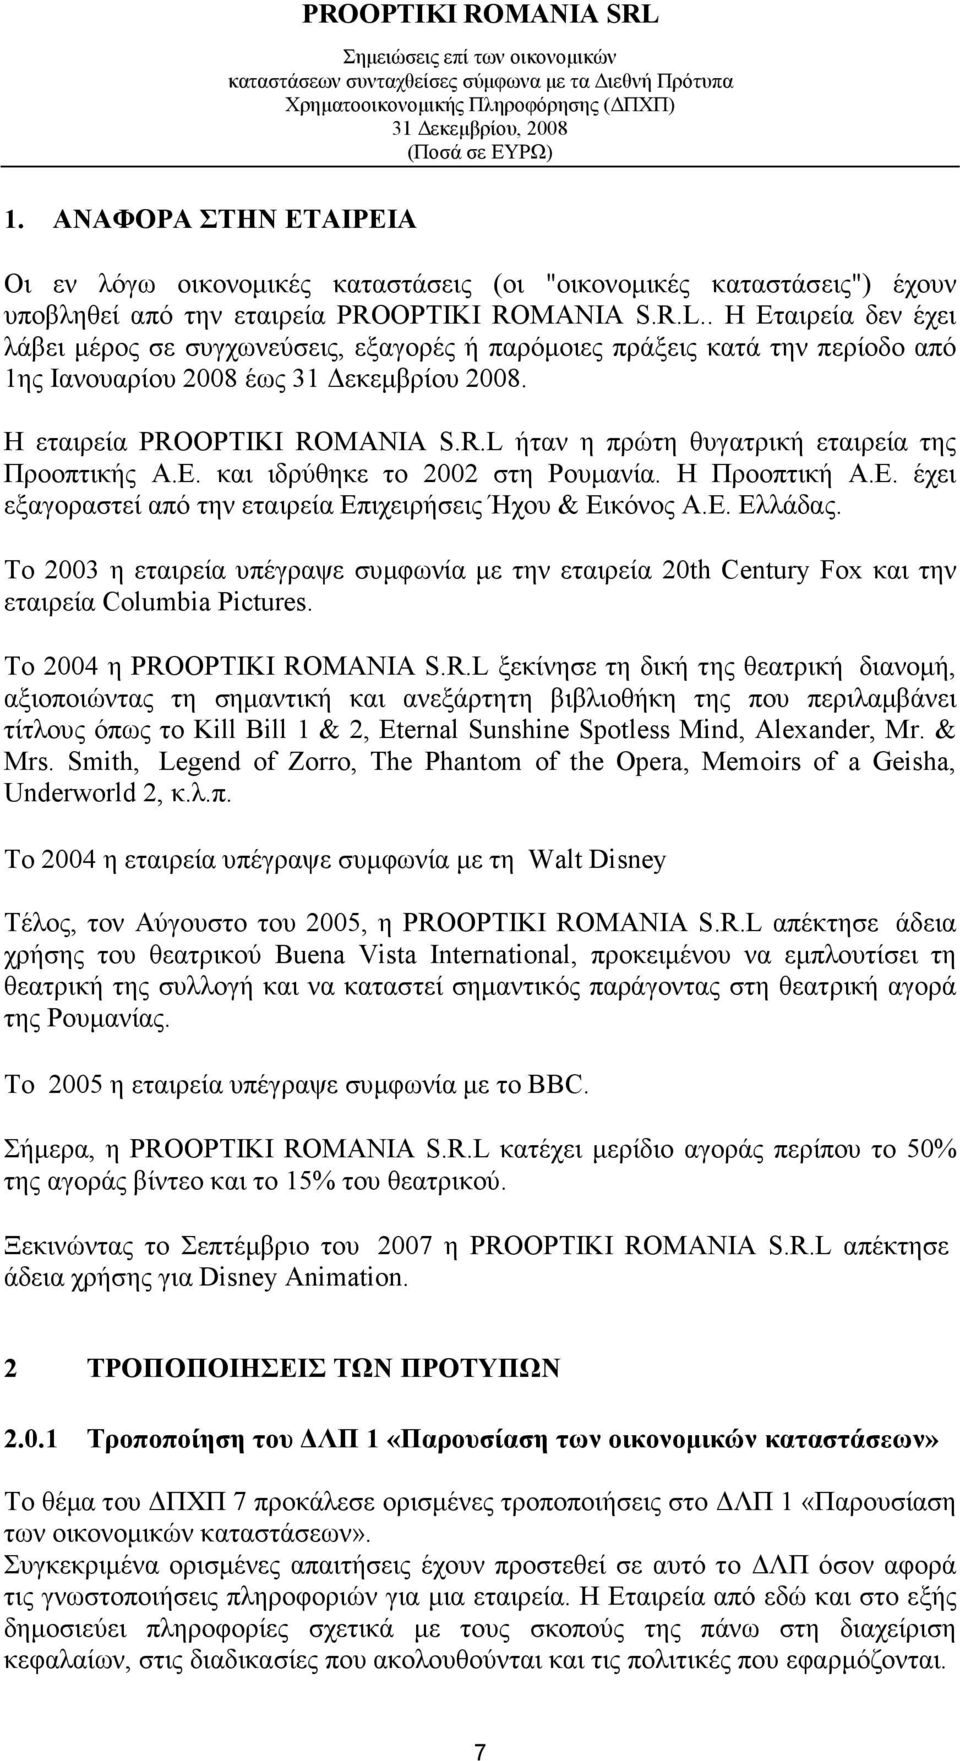 OPTIKI ROMANIA S.R.L ήταν η πρώτη θυγατρική εταιρεία της Προοπτικής Α.Ε. και ιδρύθηκε το 2002 στη Ρουµανία. Η Προοπτική Α.Ε. έχει εξαγοραστεί από την εταιρεία Επιχειρήσεις Ήχου & Εικόνος Α.Ε. Ελλάδας.